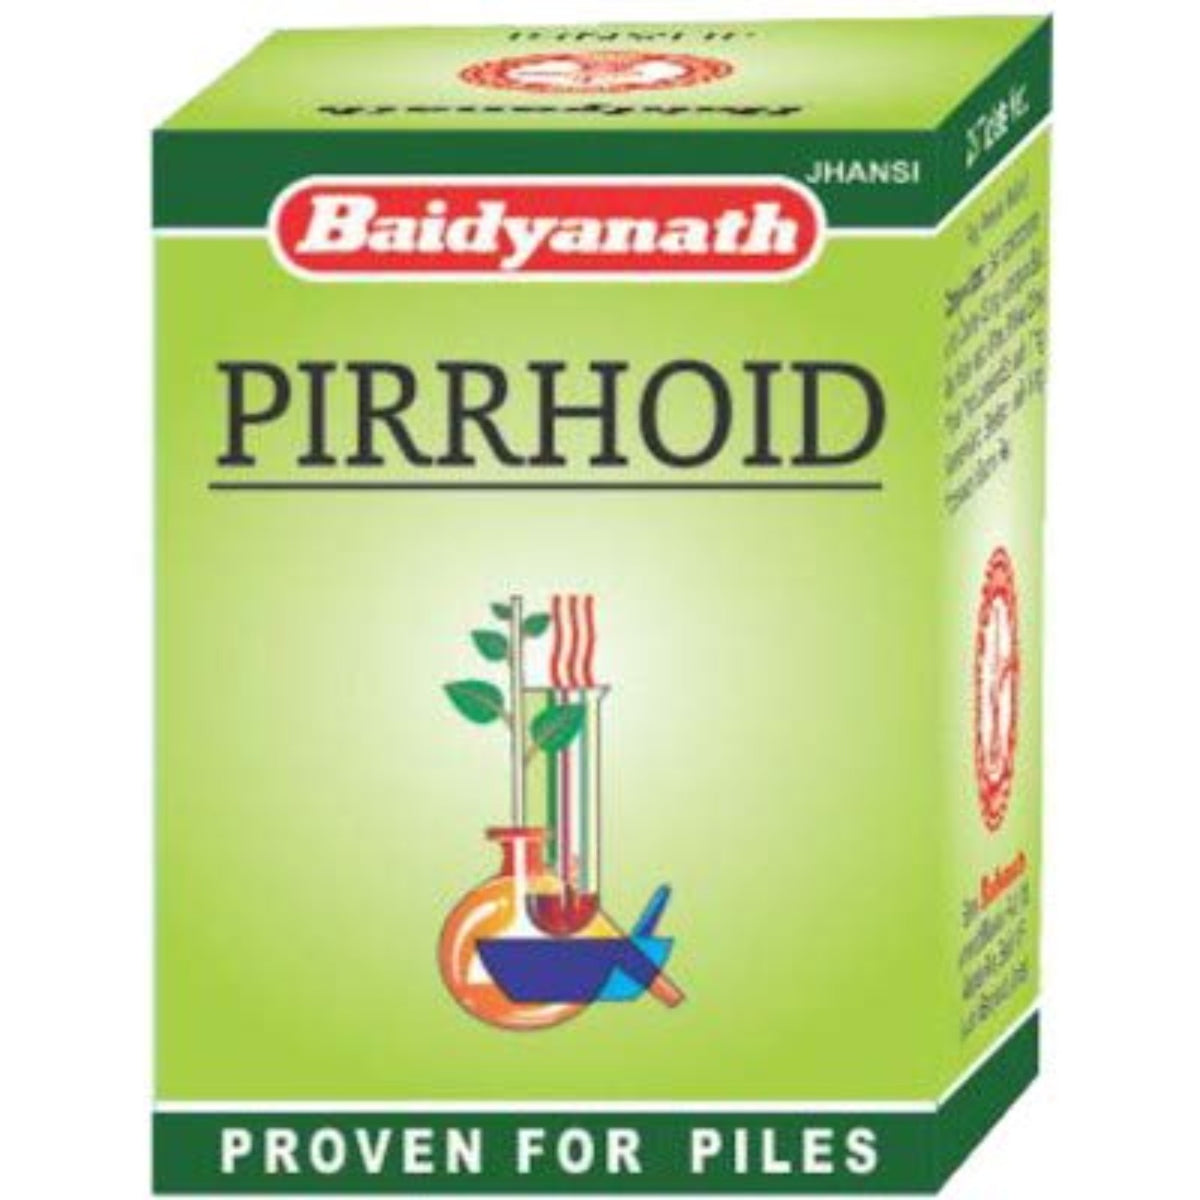 Baidyanath Ayurvedische (Jhansi) Pirrhoiden-Tabletten